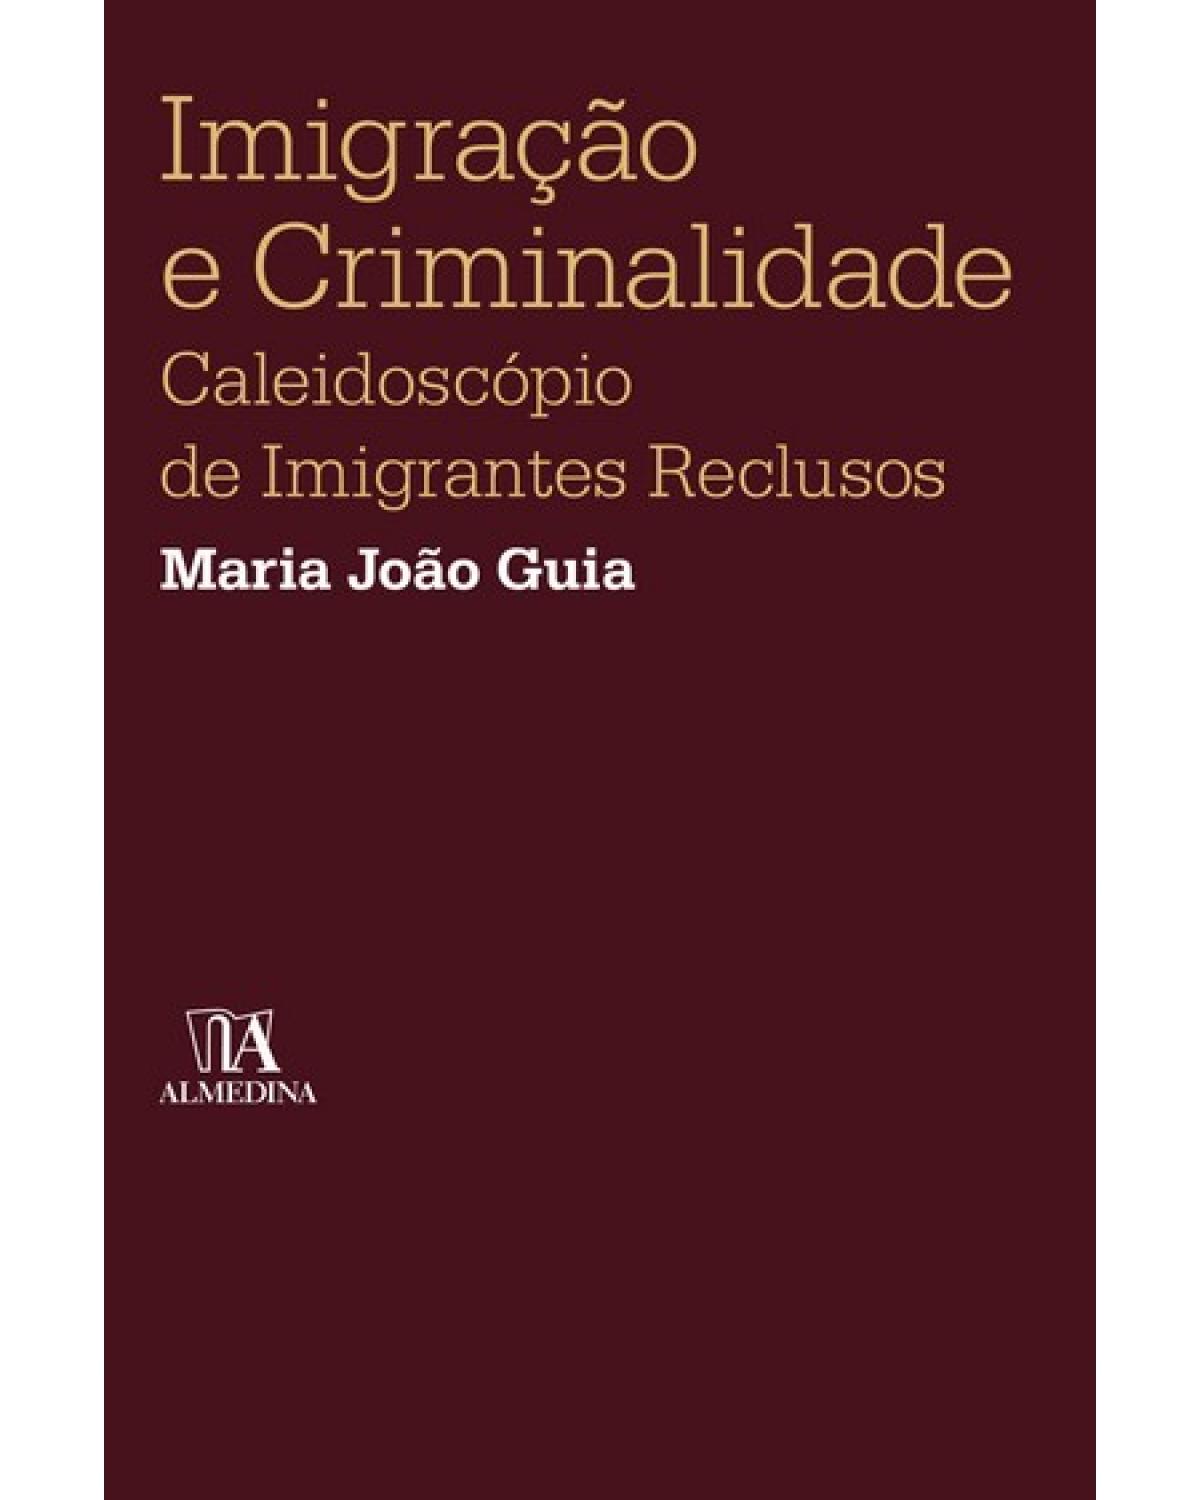 Imigração e criminalidade - caleidoscópio de imigrantes reclusos - 1ª Edição | 2008